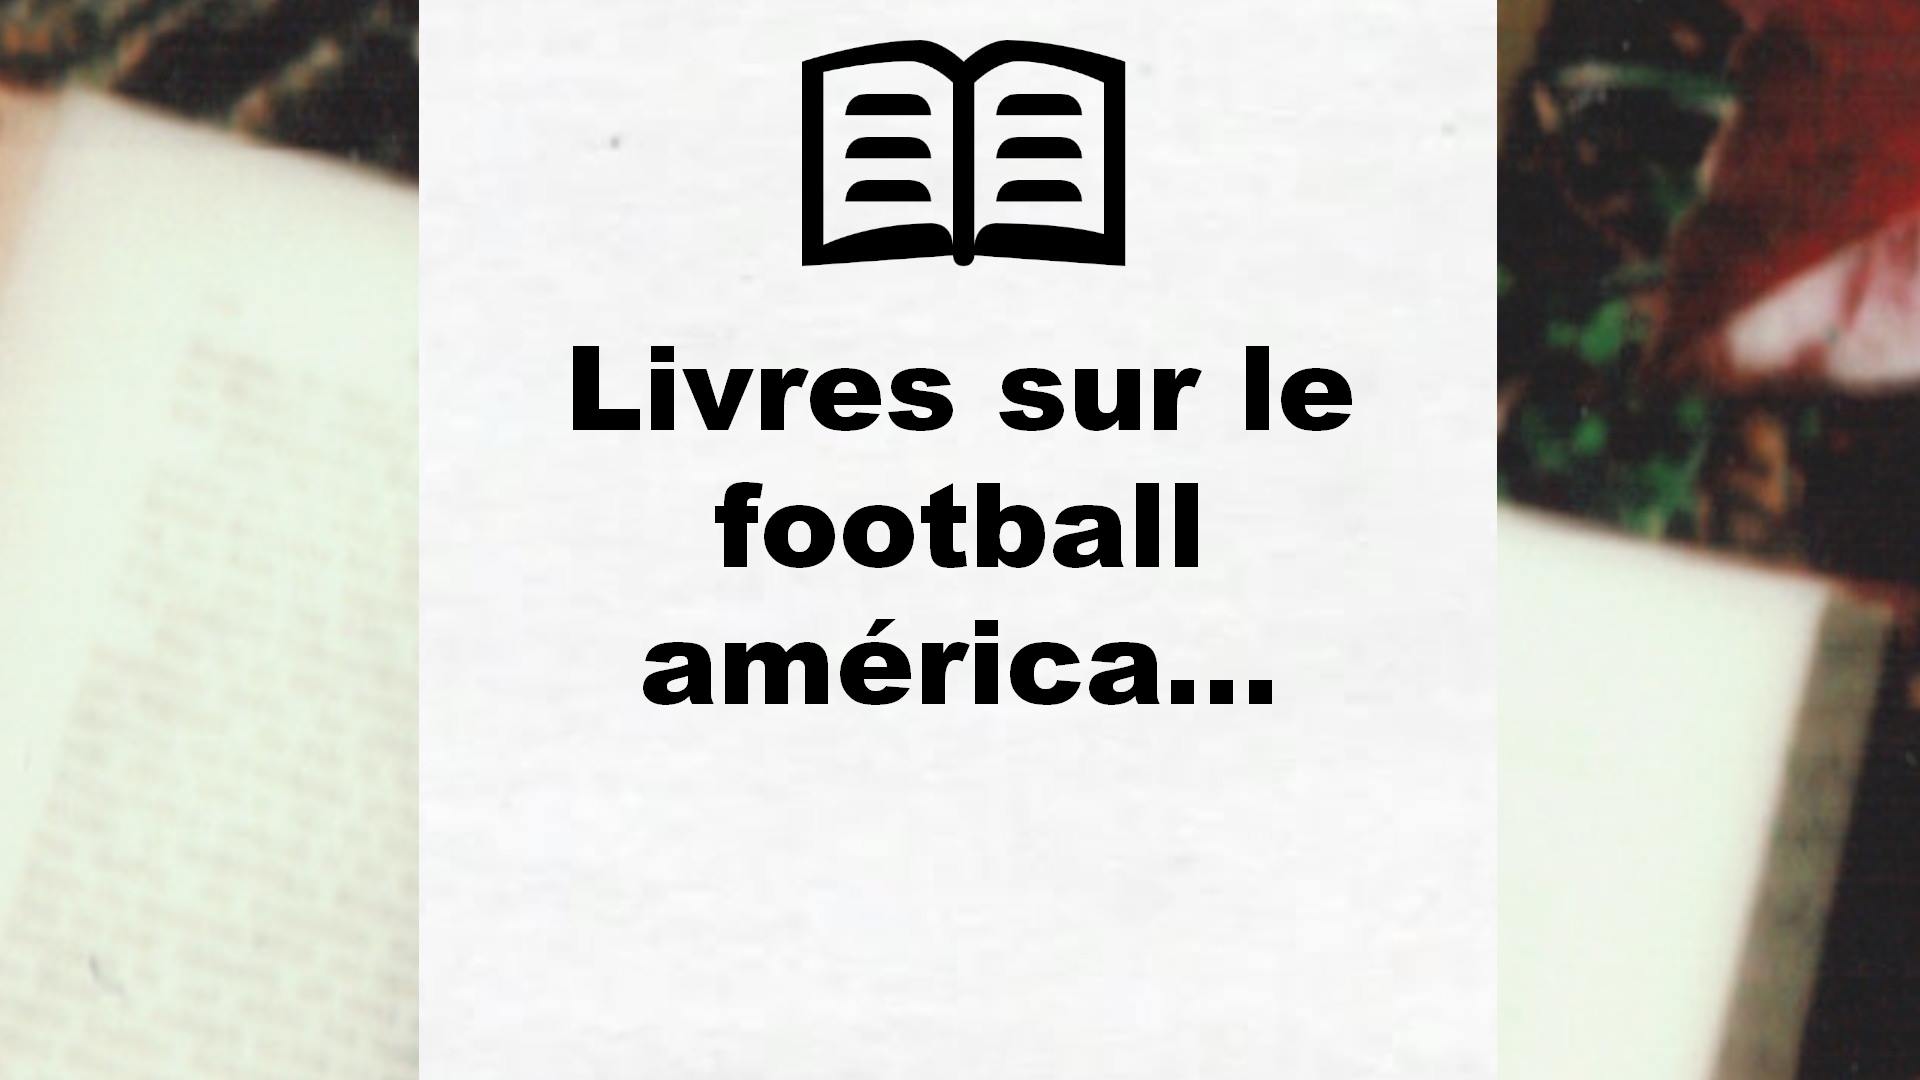 Livres sur le football américain